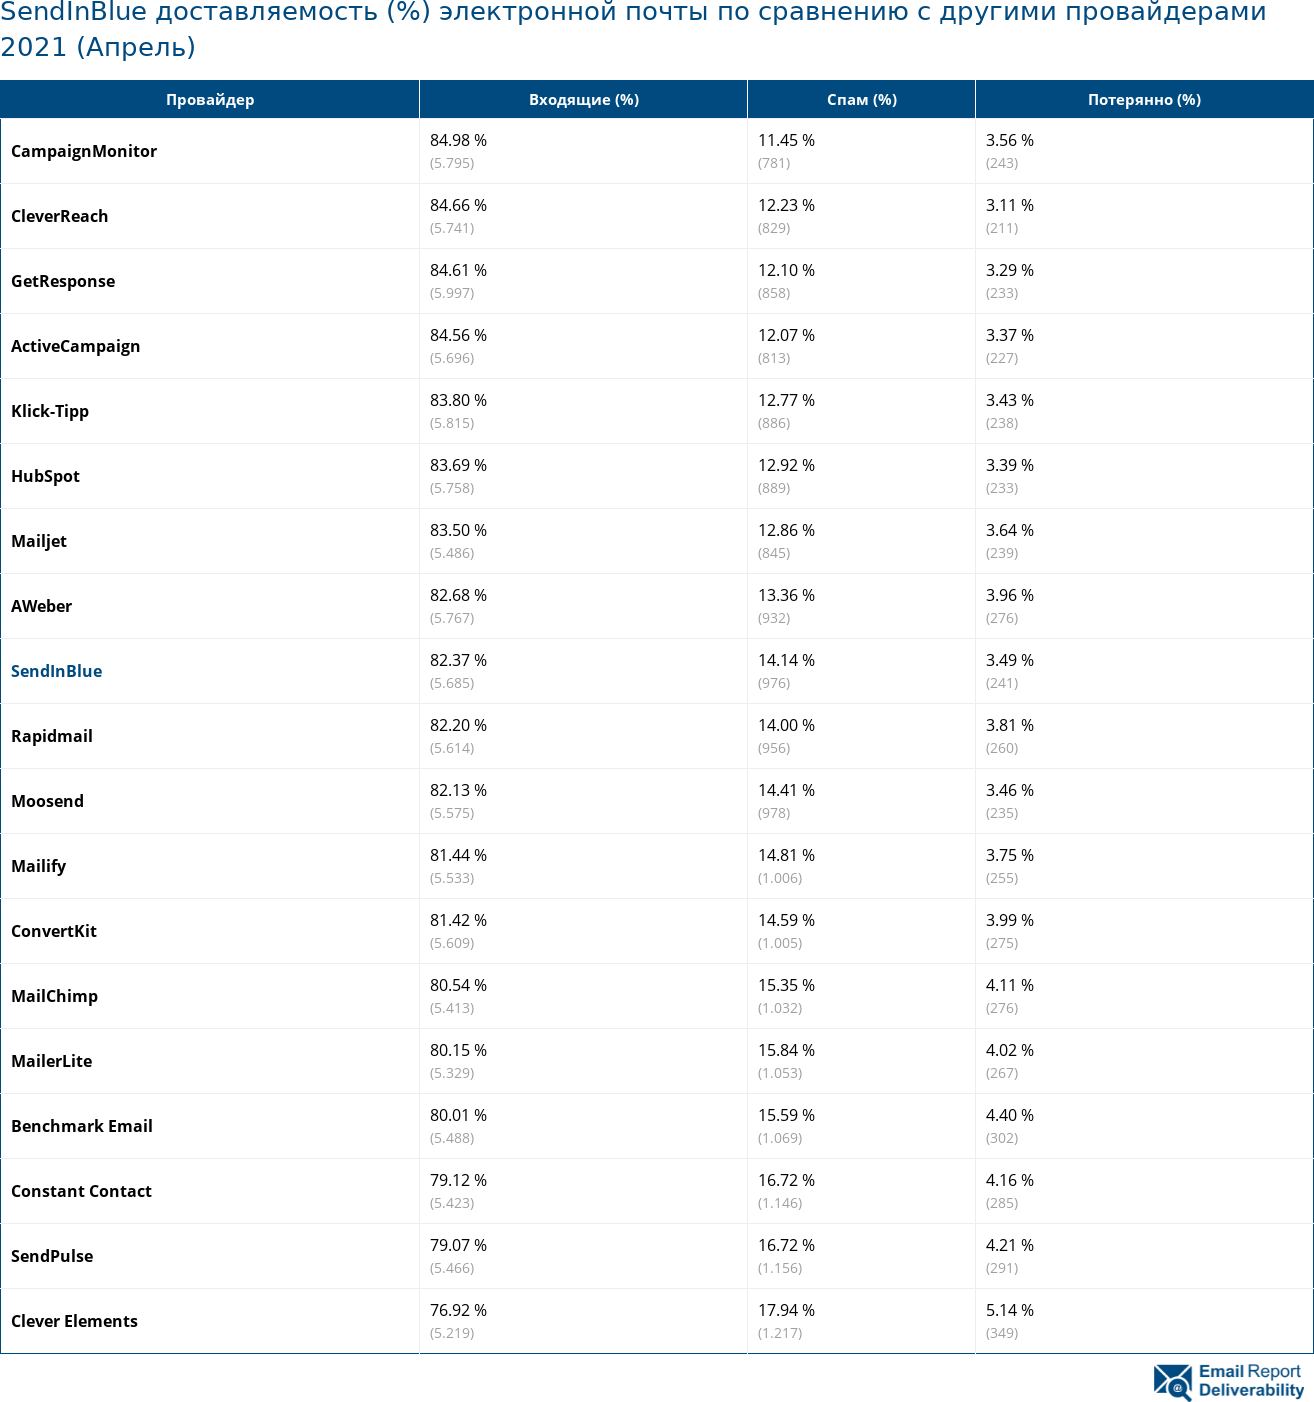 SendInBlue доставляемость (%) электронной почты по сравнению с другими провайдерами 2021 (Апрель)